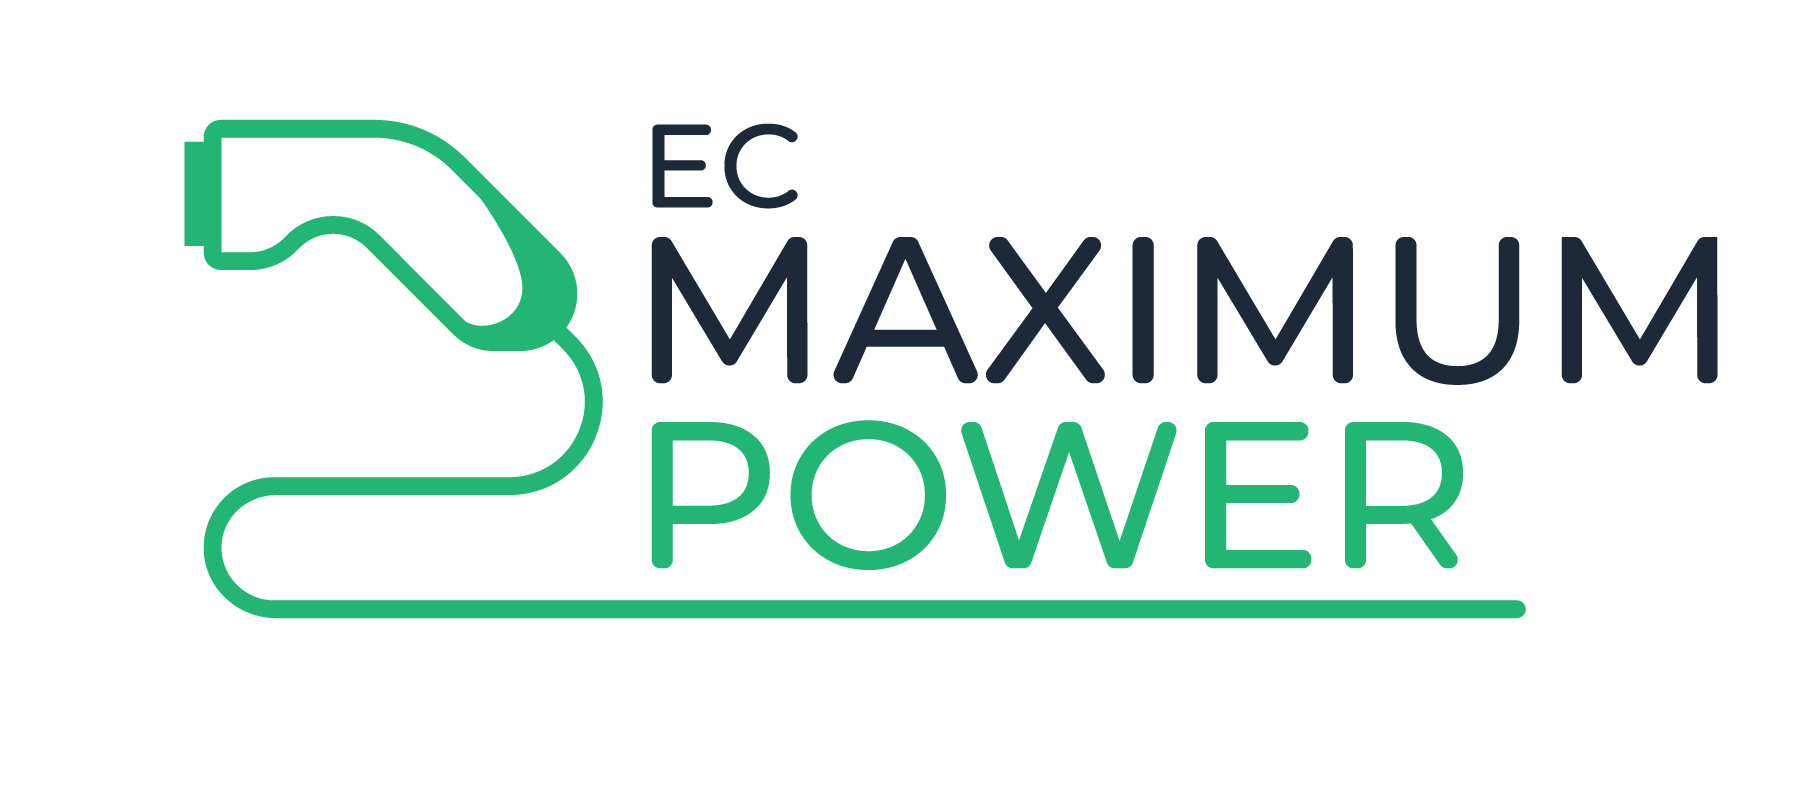 EKCO Maximum Power